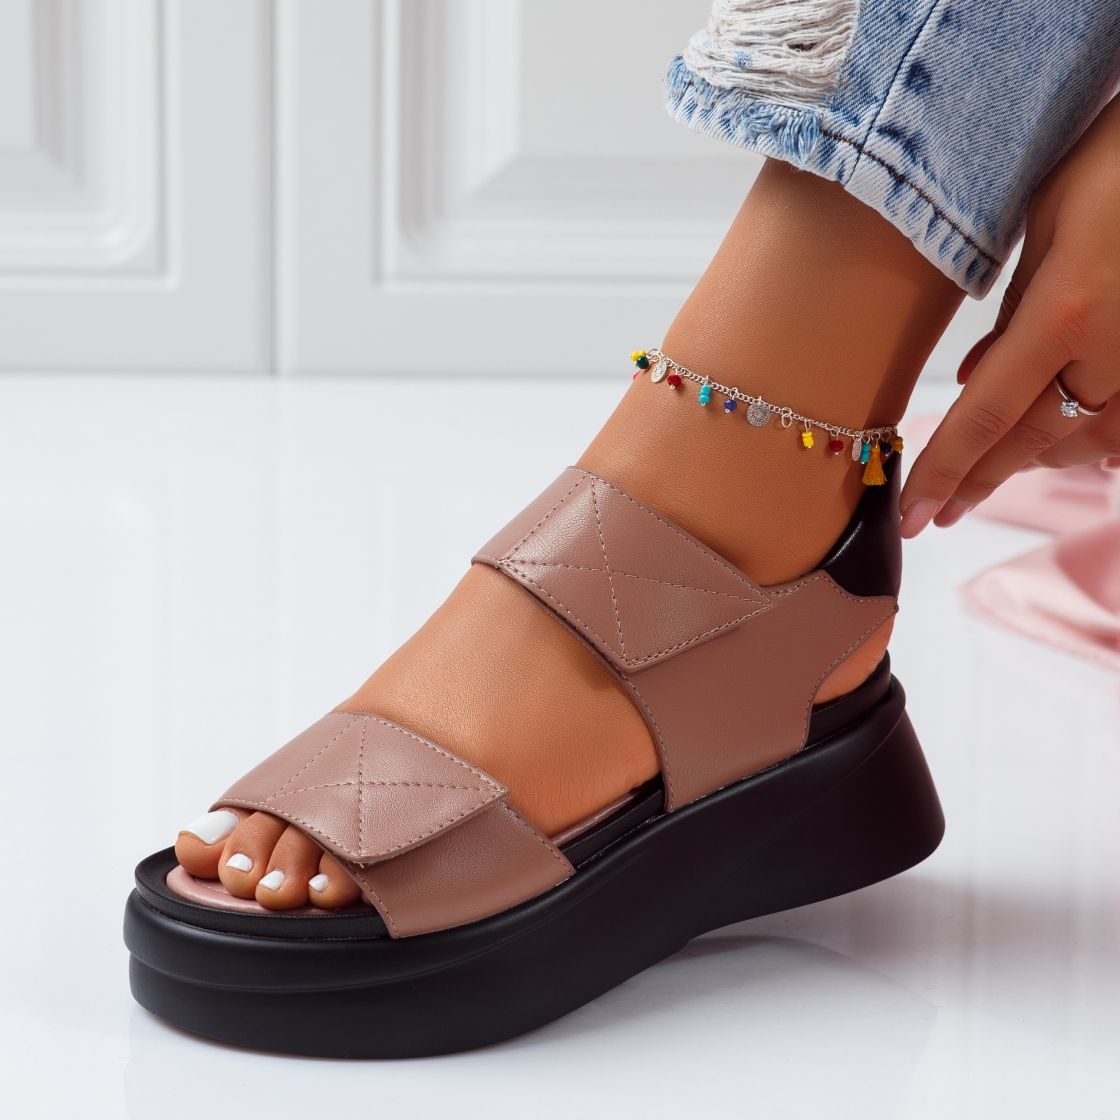 Дамски сандали с платформата Melanie Khaki #5127M